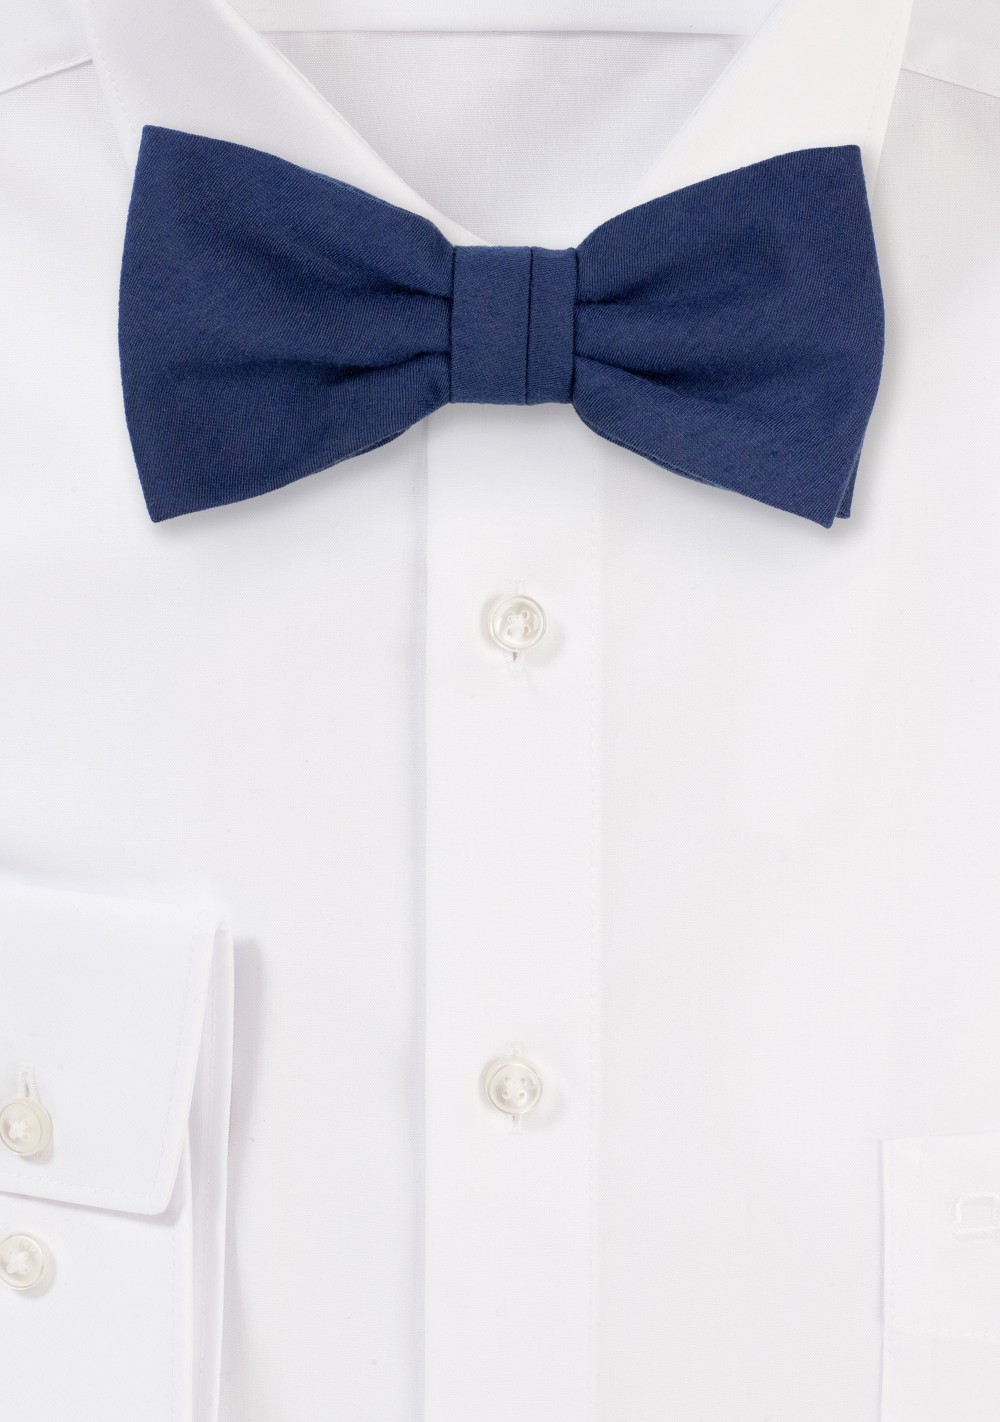 Elegant Matte Navy Bow Tie